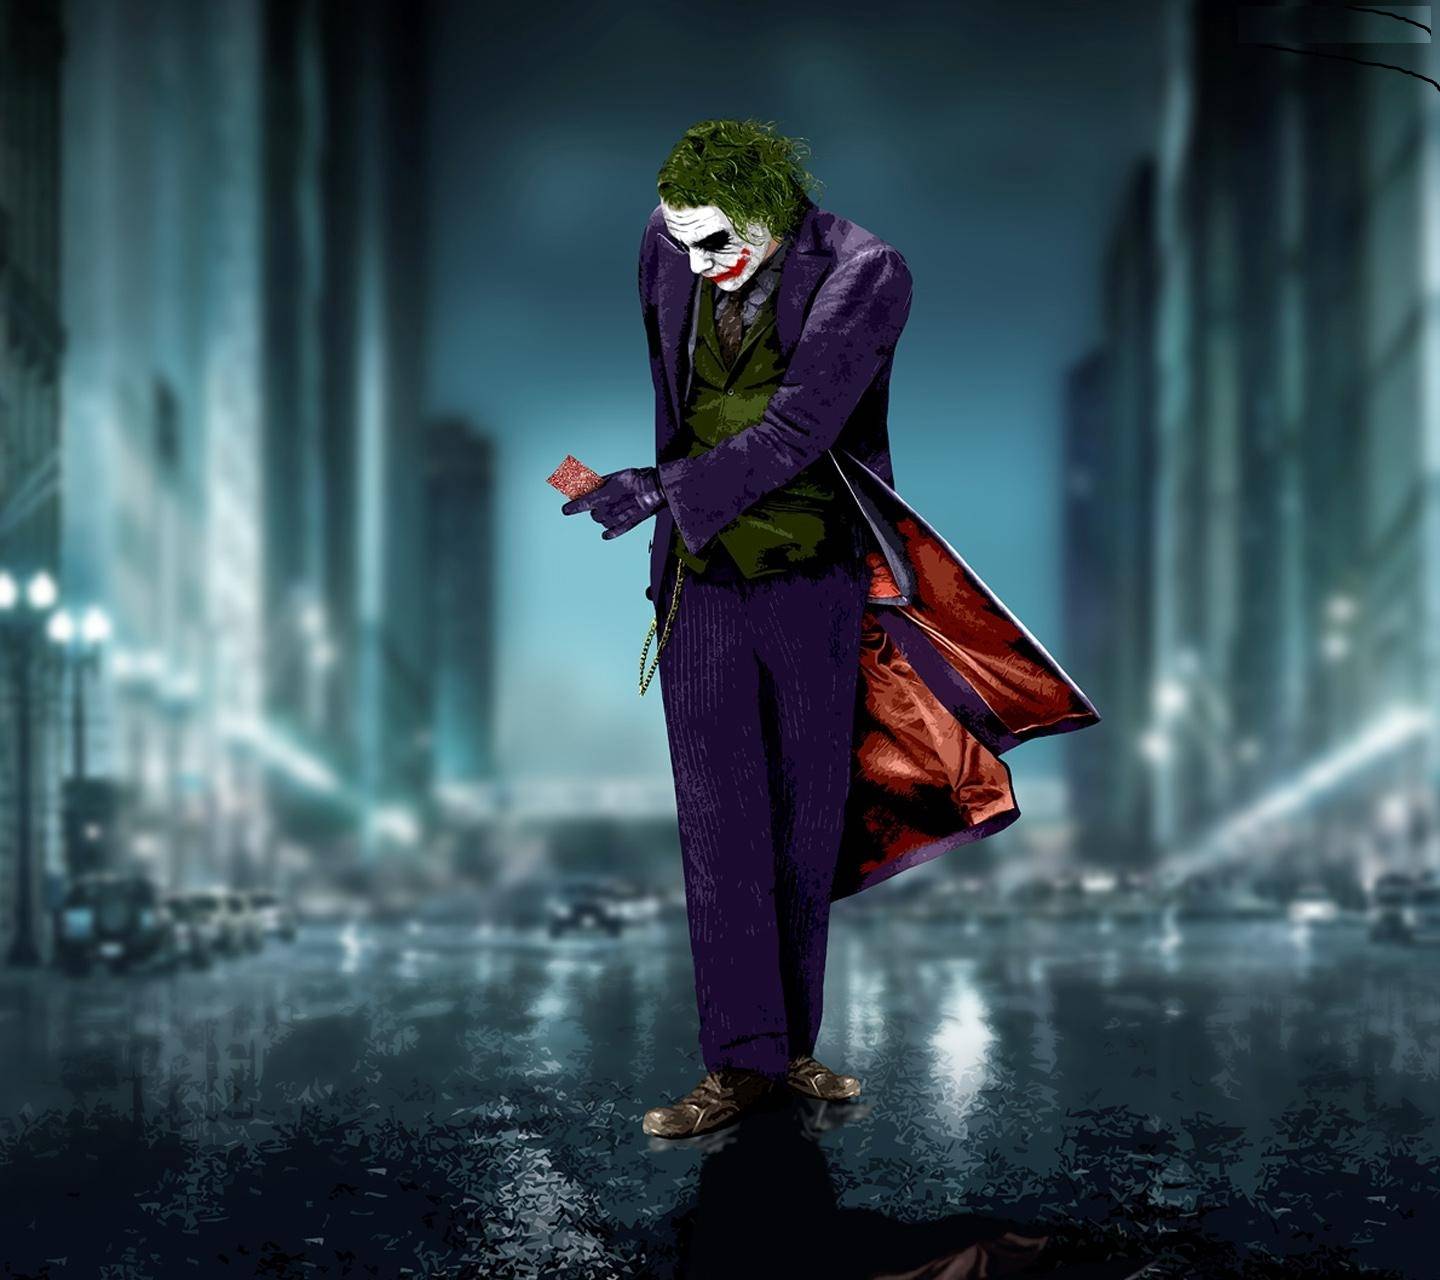 Joker Desktop Wallpapers - Top Free Joker Desktop Backgrounds ...